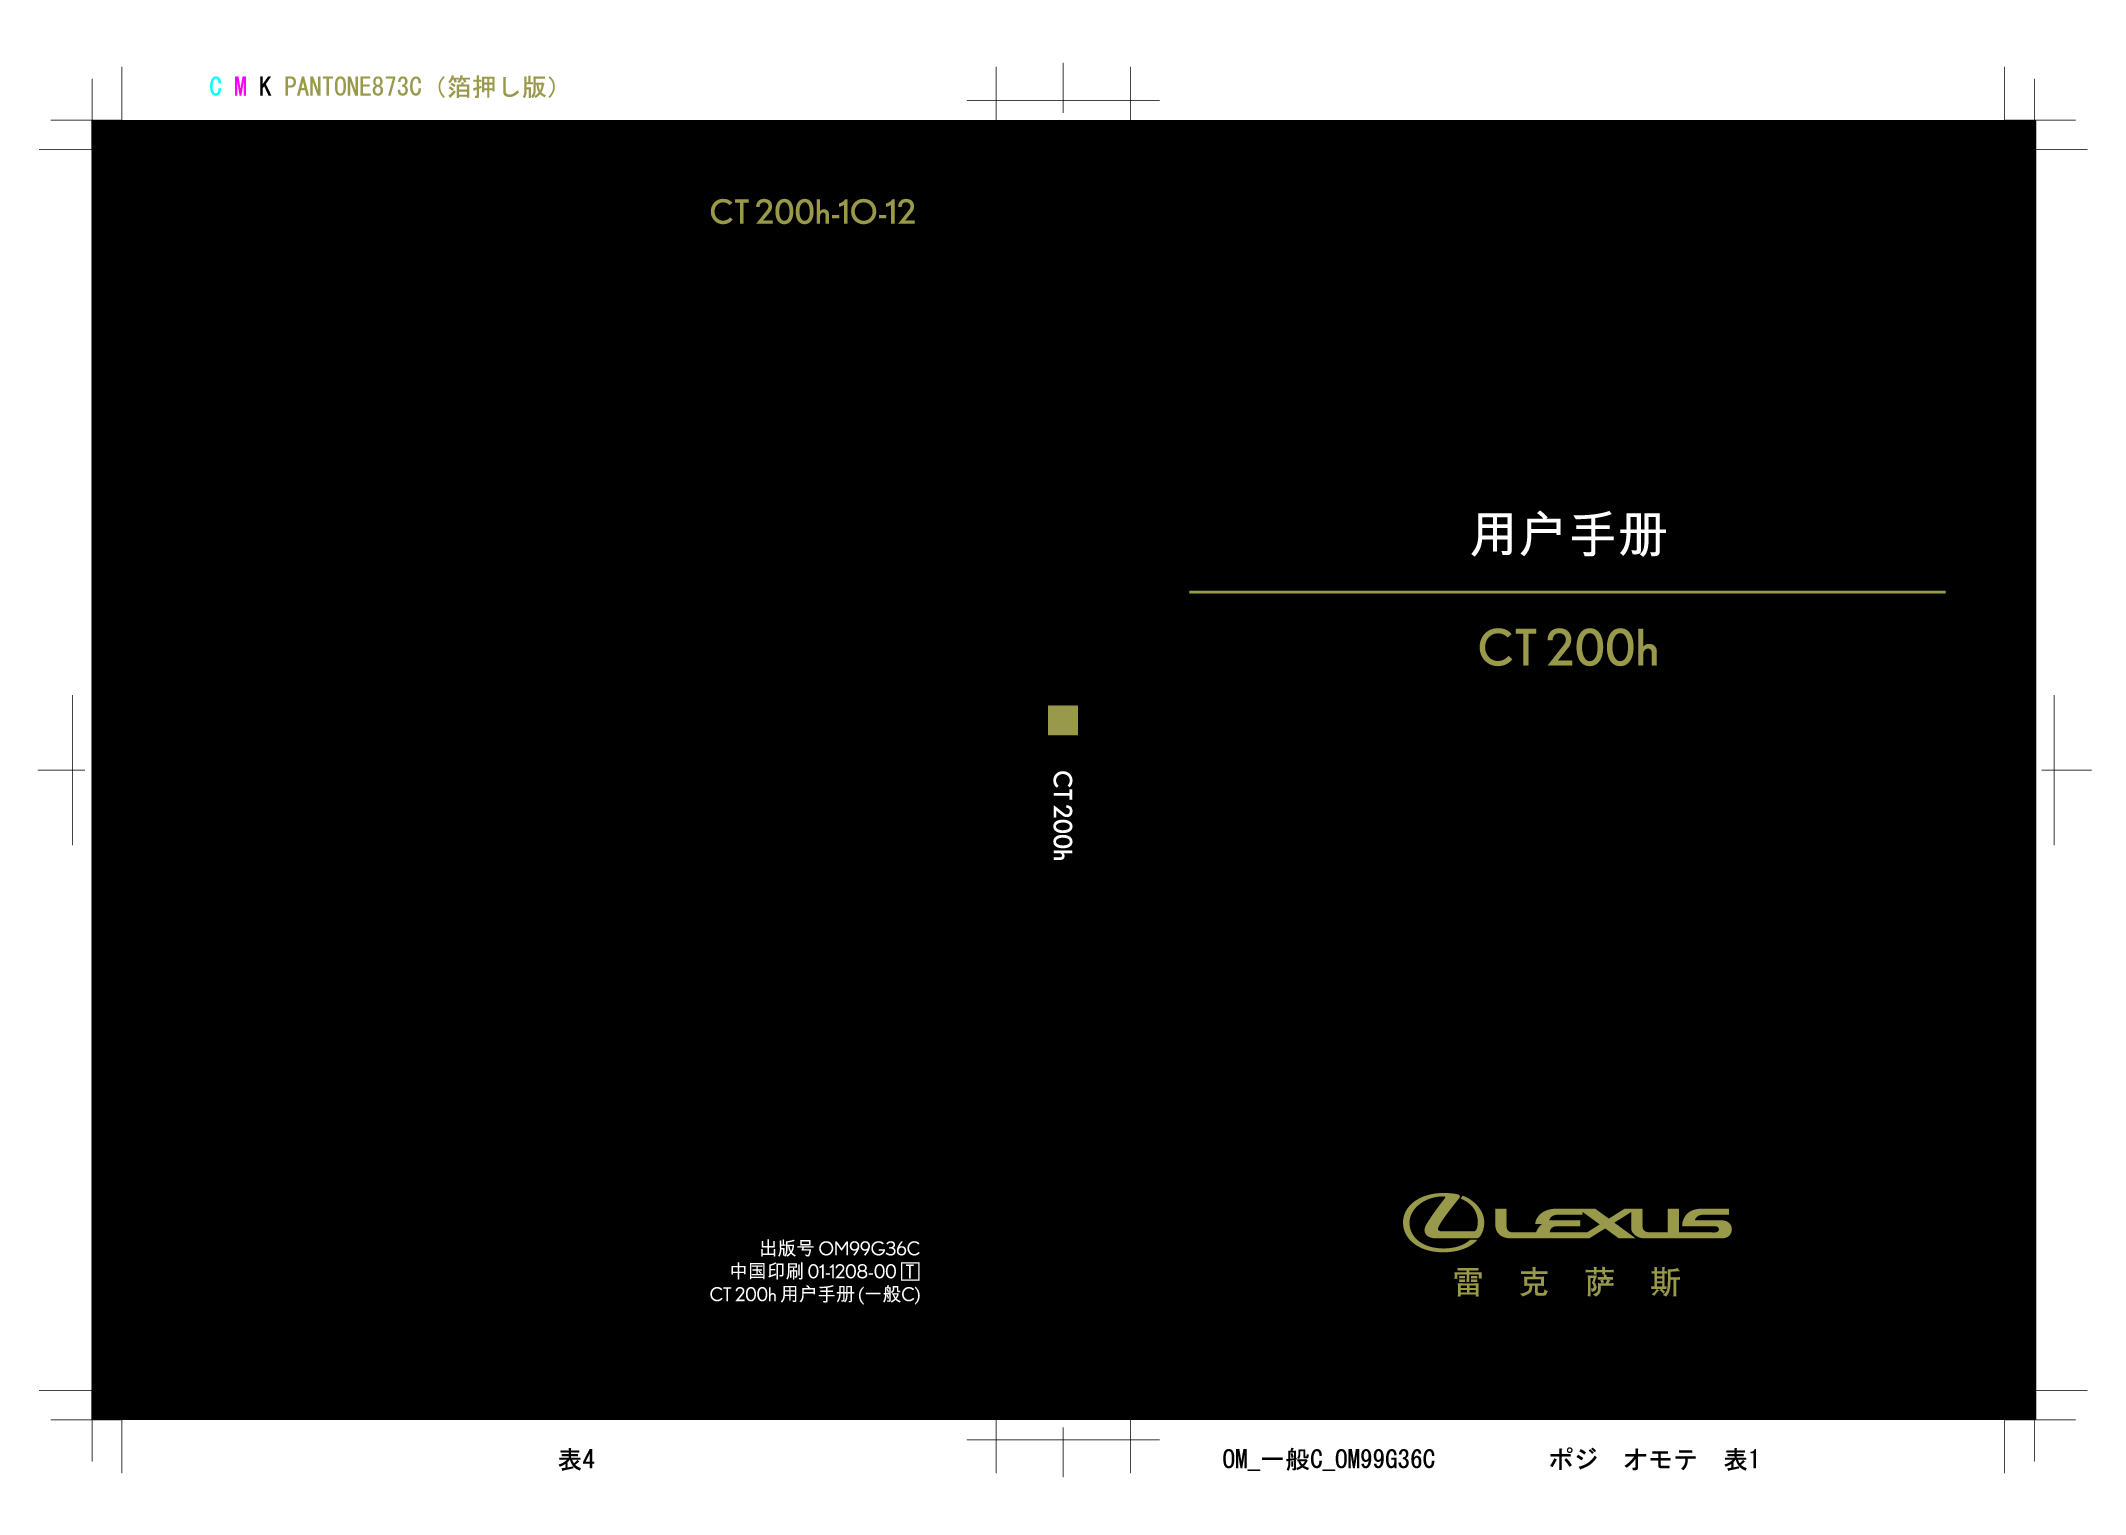 雷克萨斯 Lexus CT200h 2012 用户手册 封面